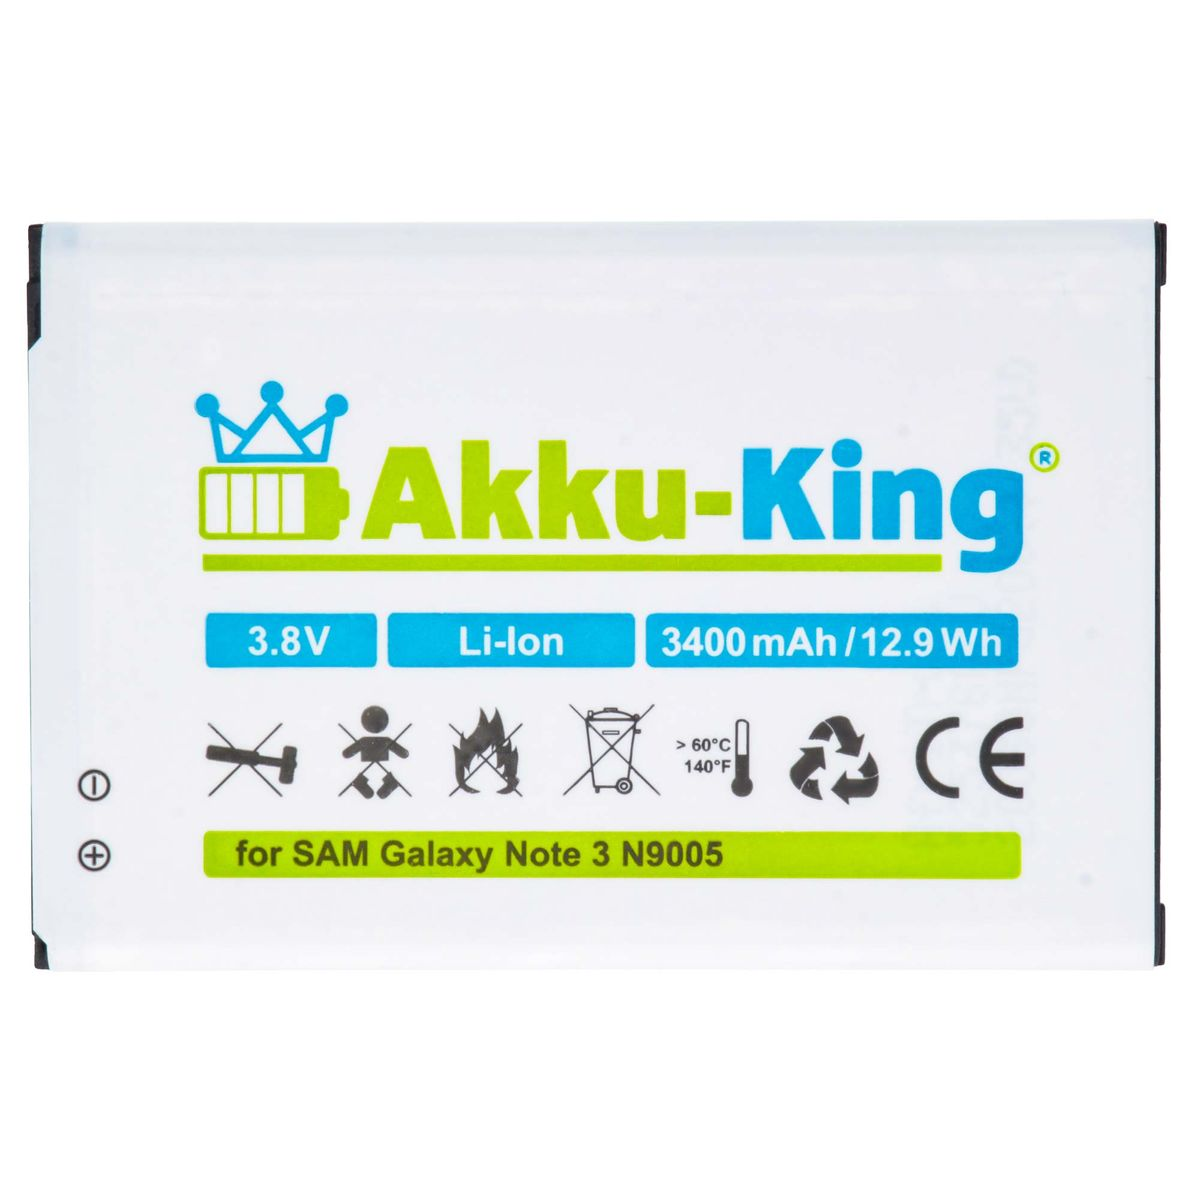 3.8 3400mAh Handy-Akku, B800BE kompatibel mit Li-Ion Akku Samsung AKKU-KING Volt,